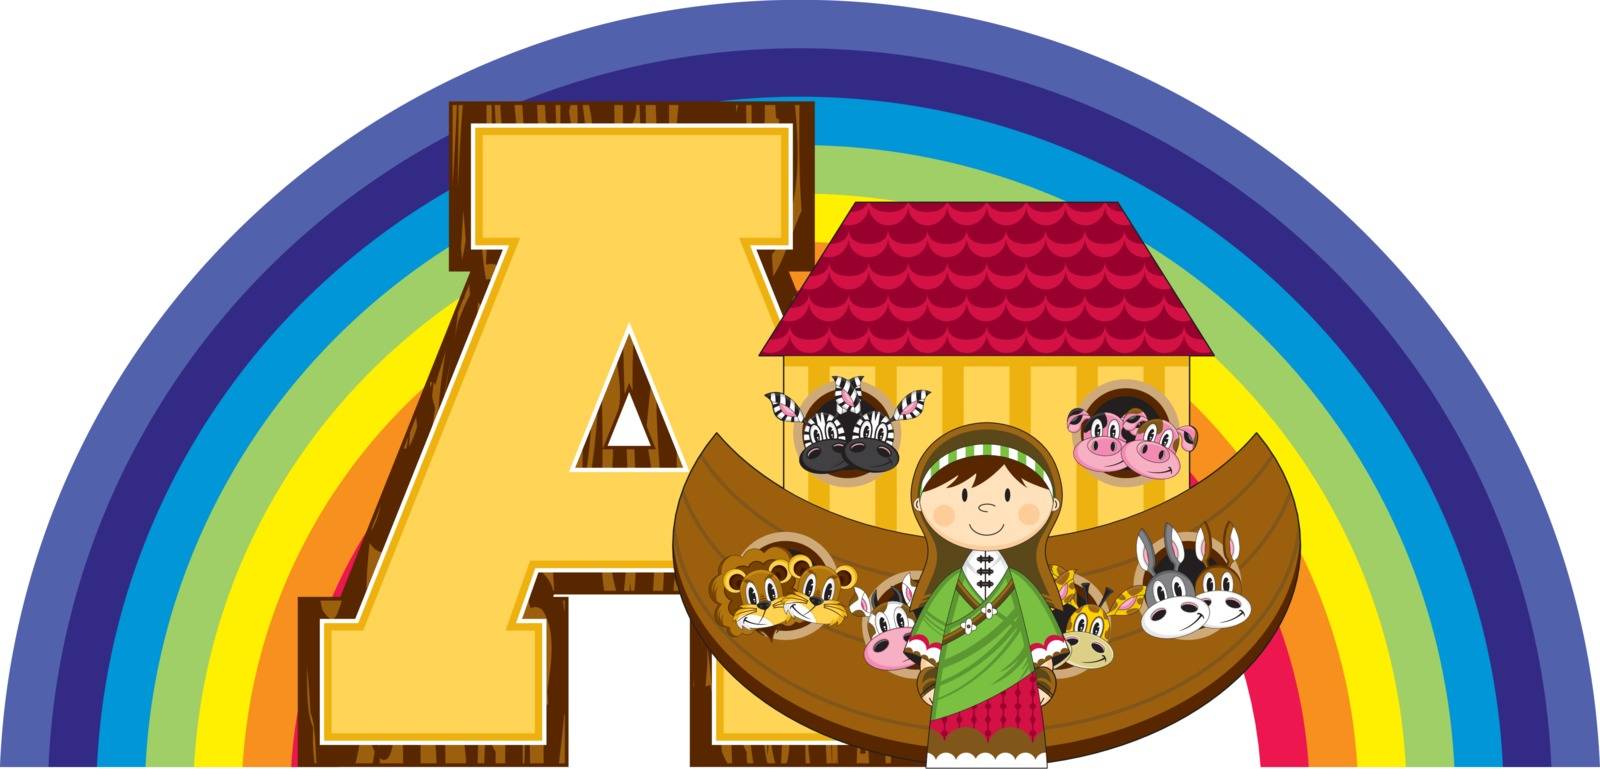 A is for Ark by markmurphycreative